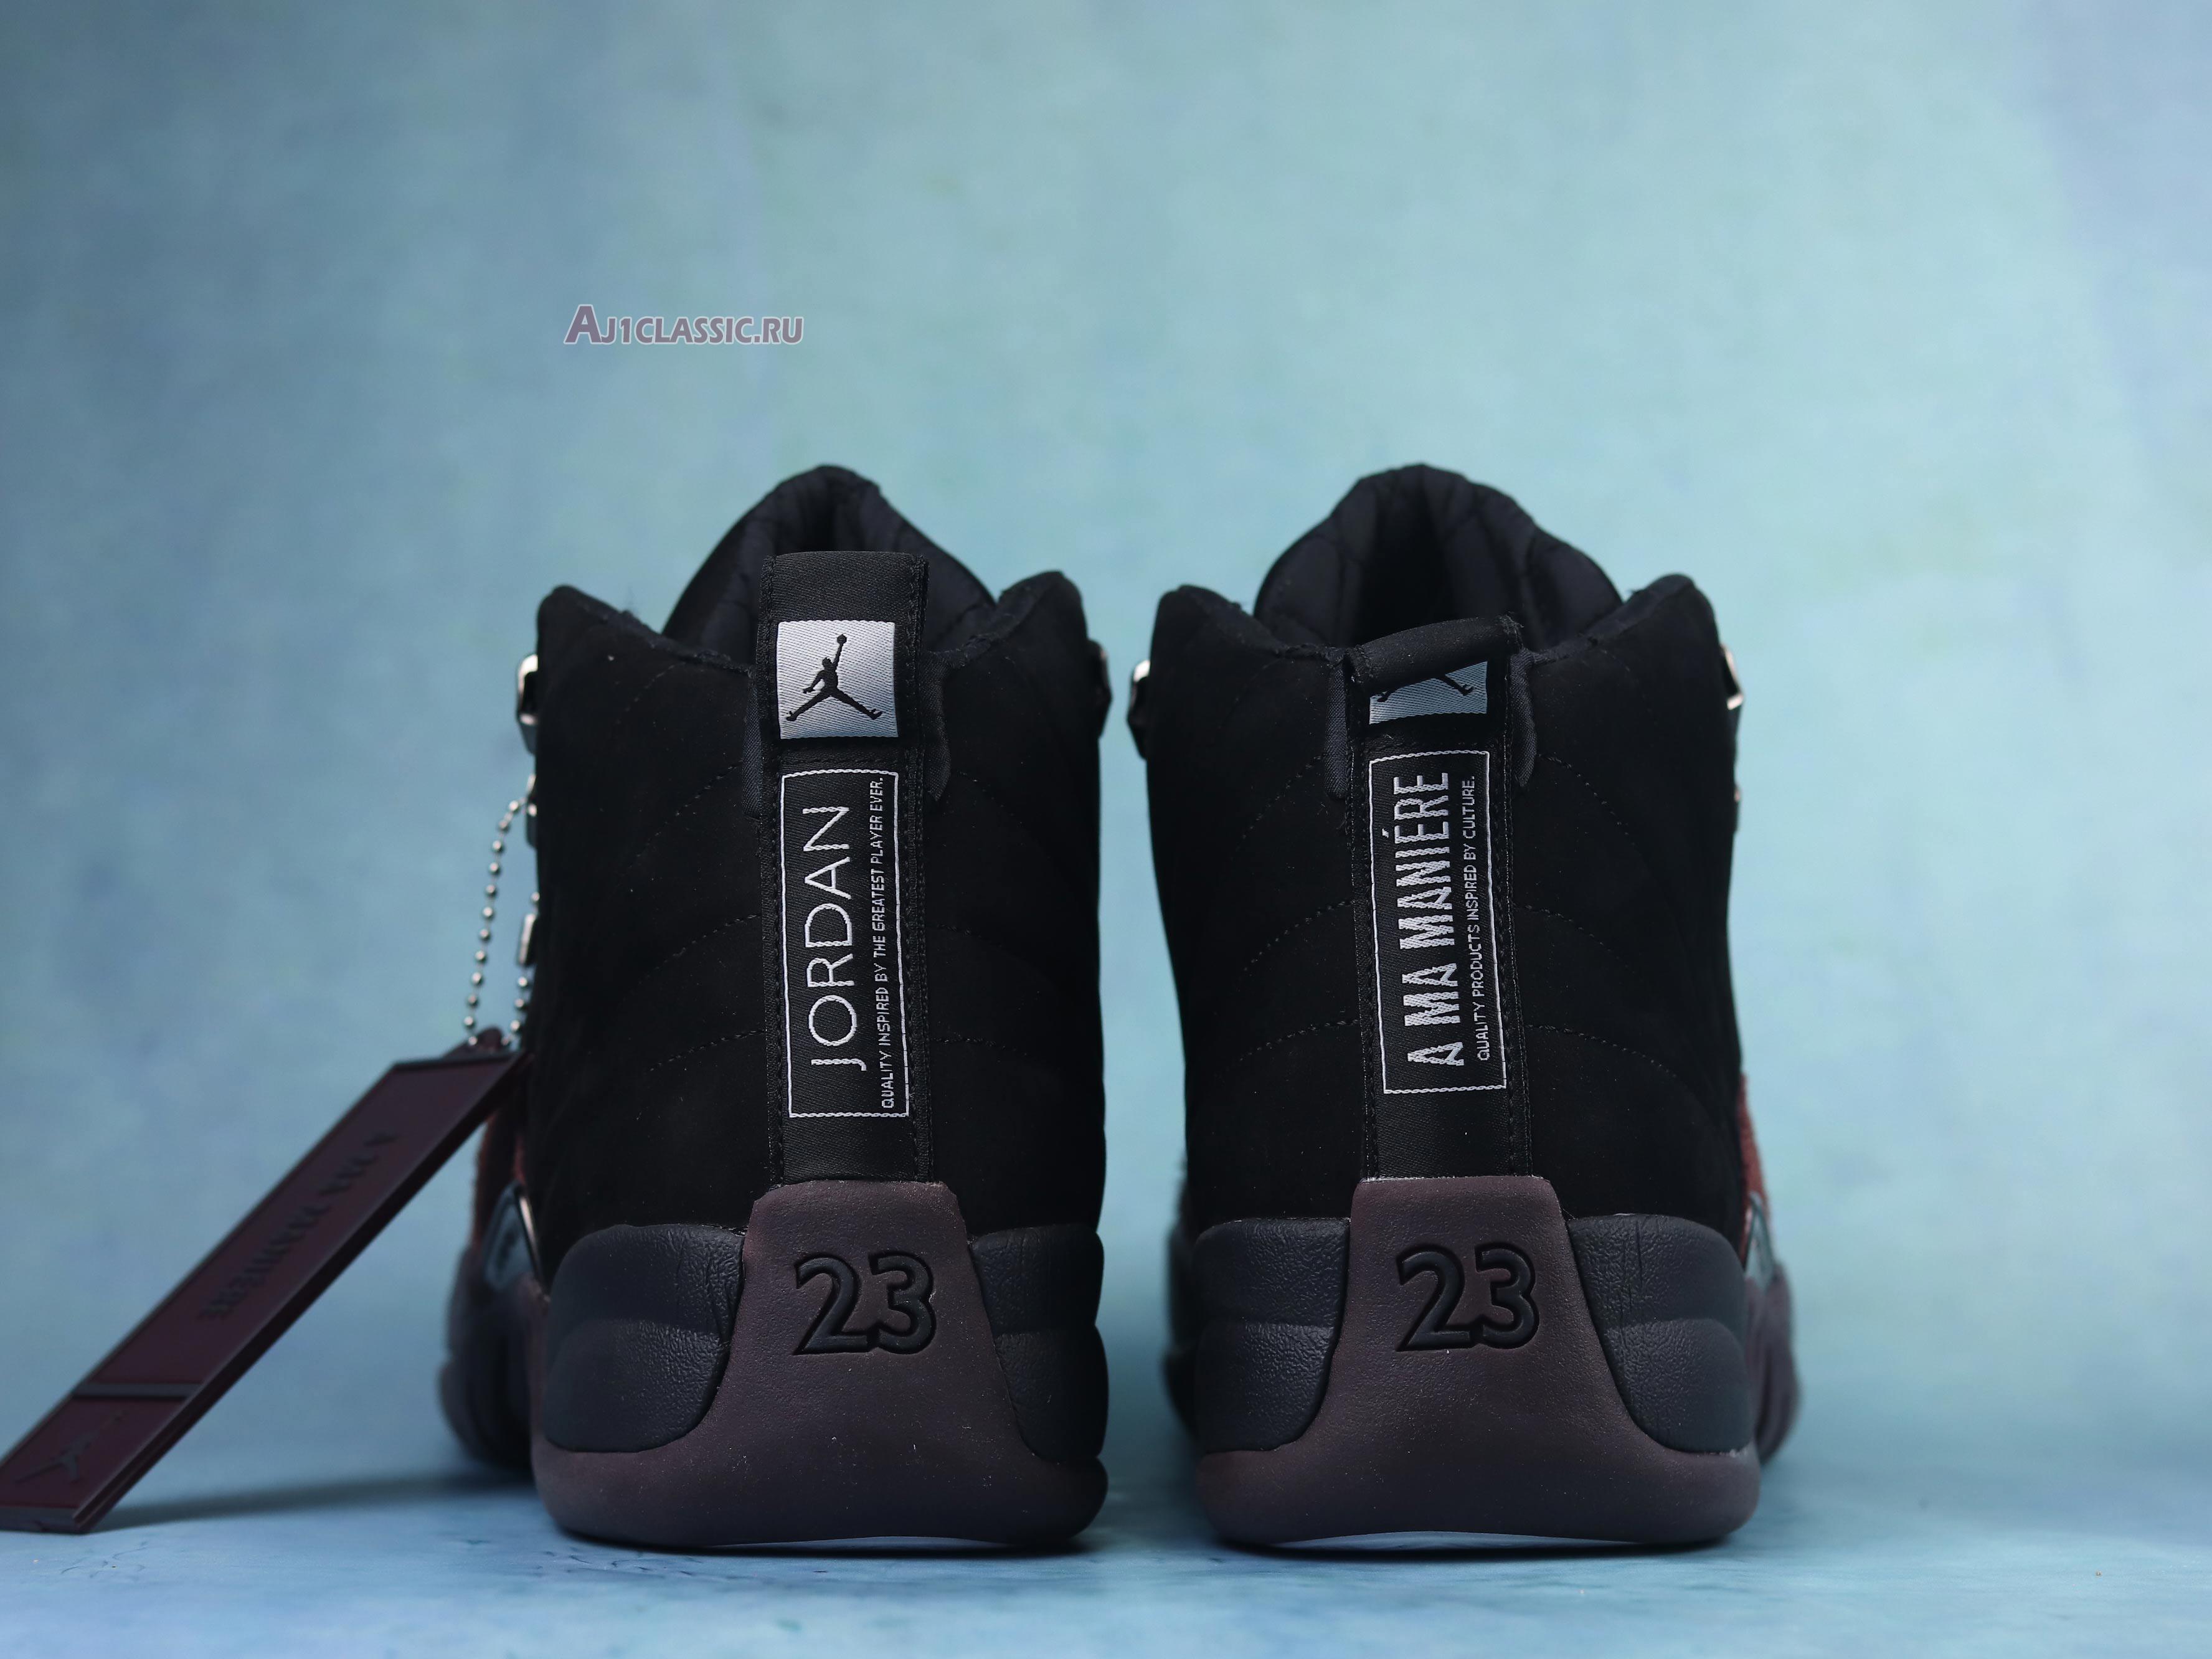 A Ma Maniére x Air Jordan 12 Retro "Black" DV6989-001